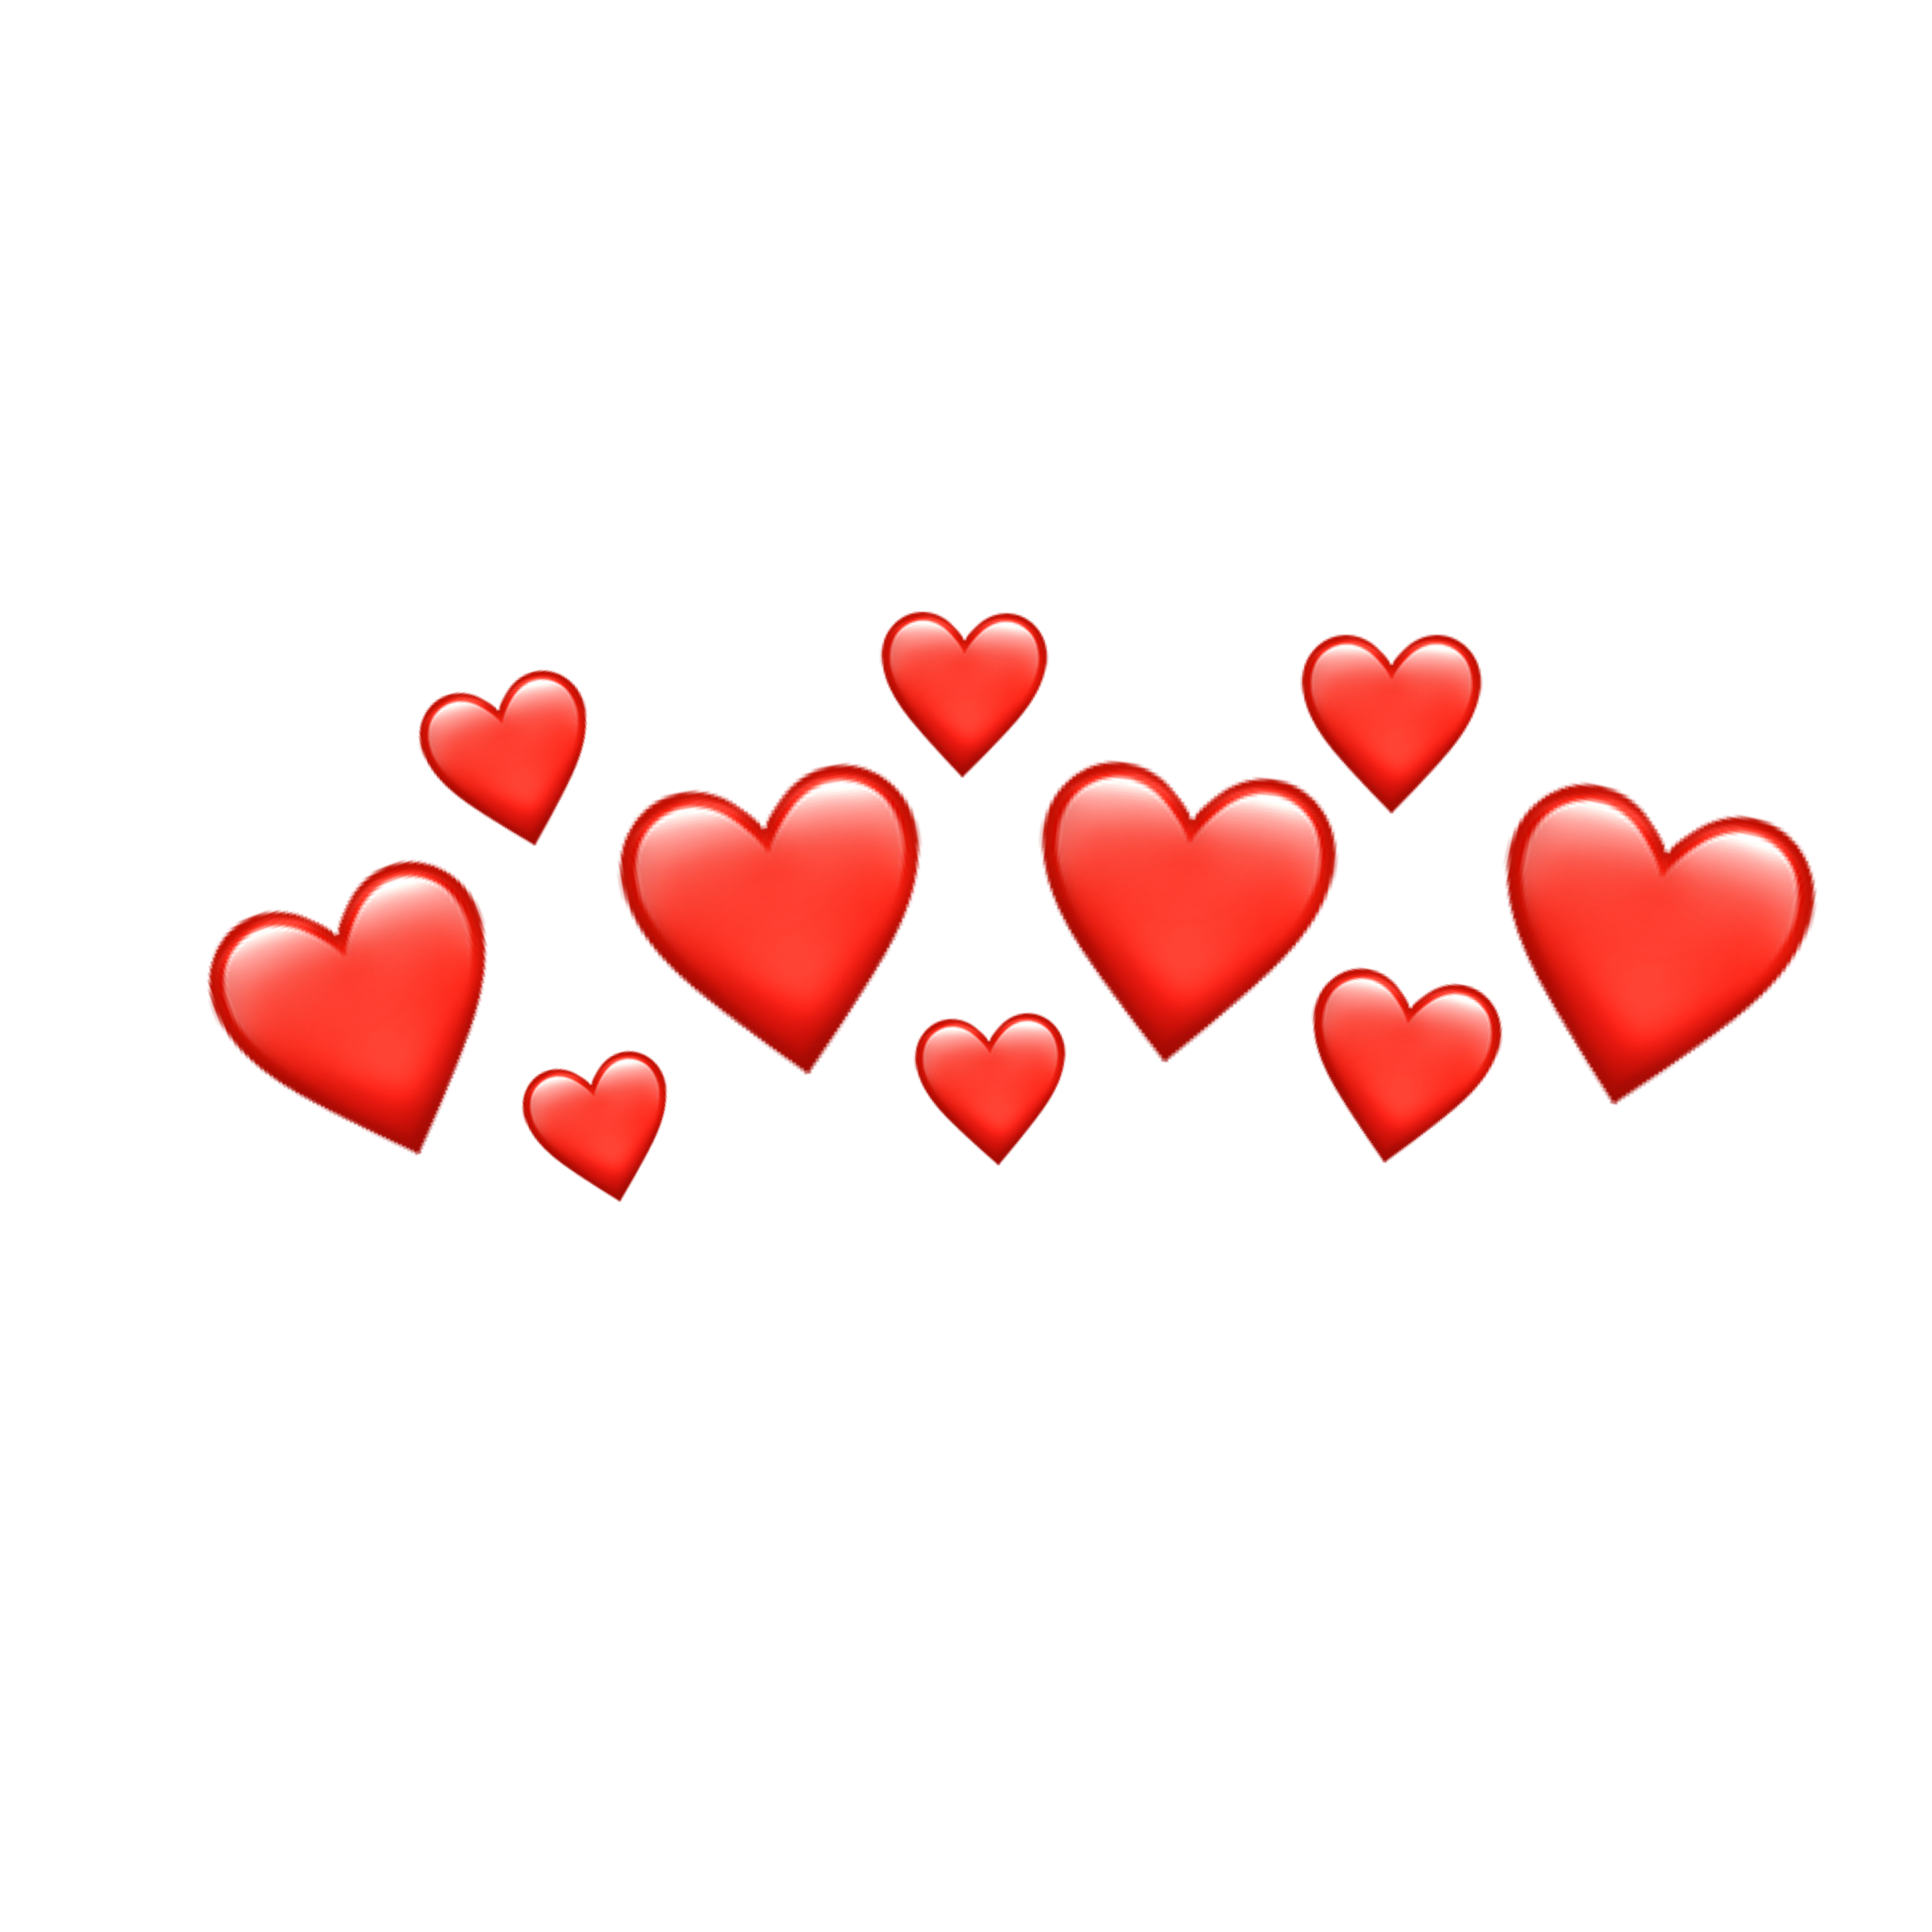 Emoji heart png. Оранжевые сердечки на белом фоне. Эмодзи оранжевое сердце. Оранжевые сердечки над головой. Сердце из сердец для ватсапа.